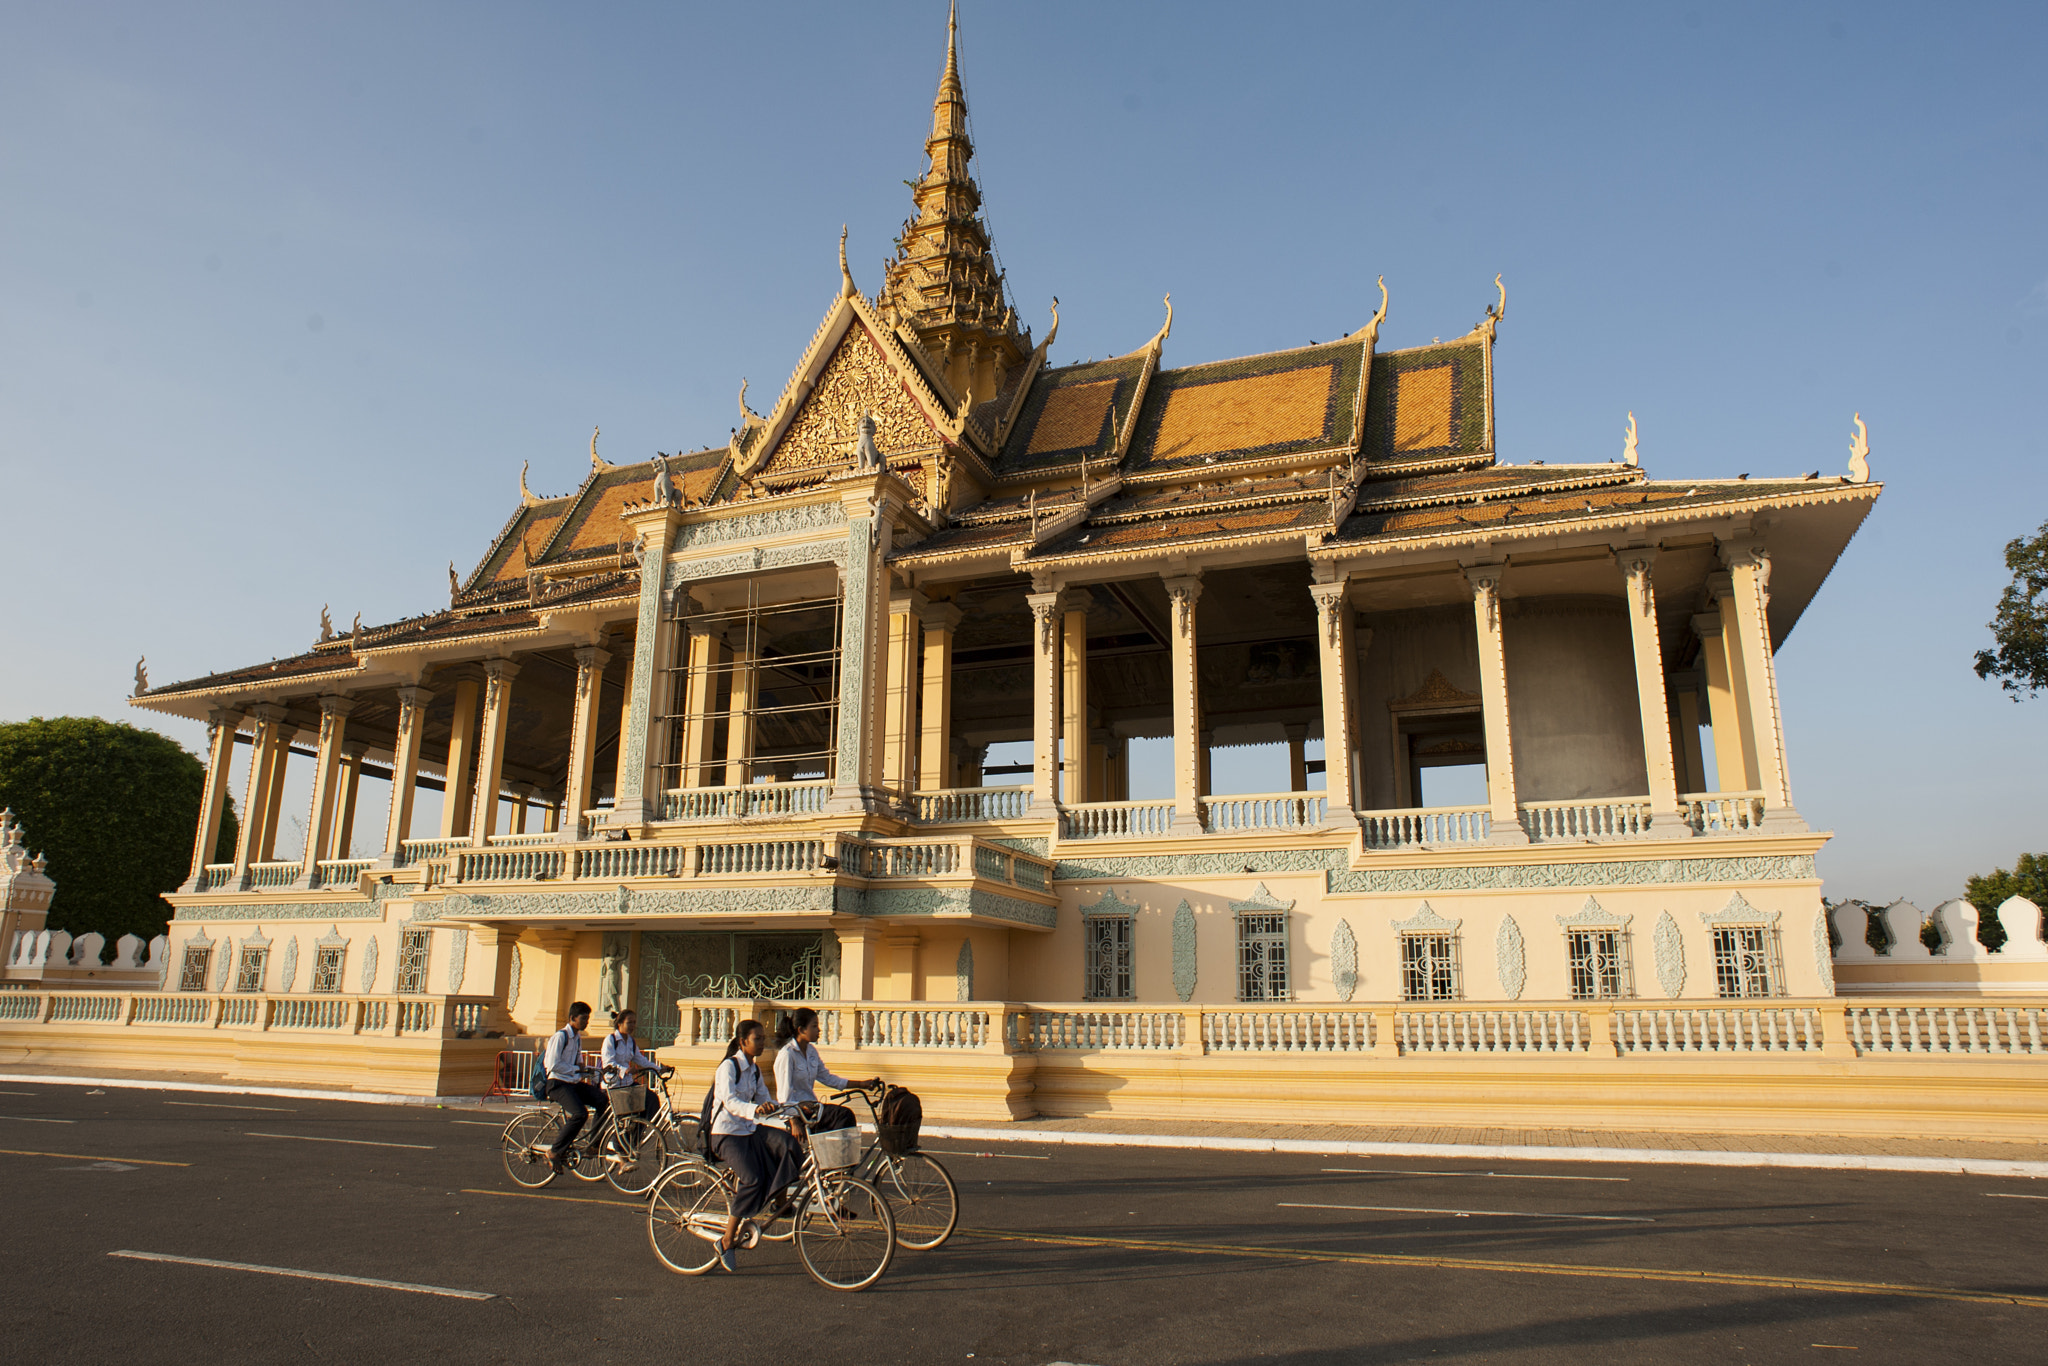 Nikon D3 + Nikon AF Nikkor 20mm F2.8D sample photo. Early morning at royal palace (cambodia) photography